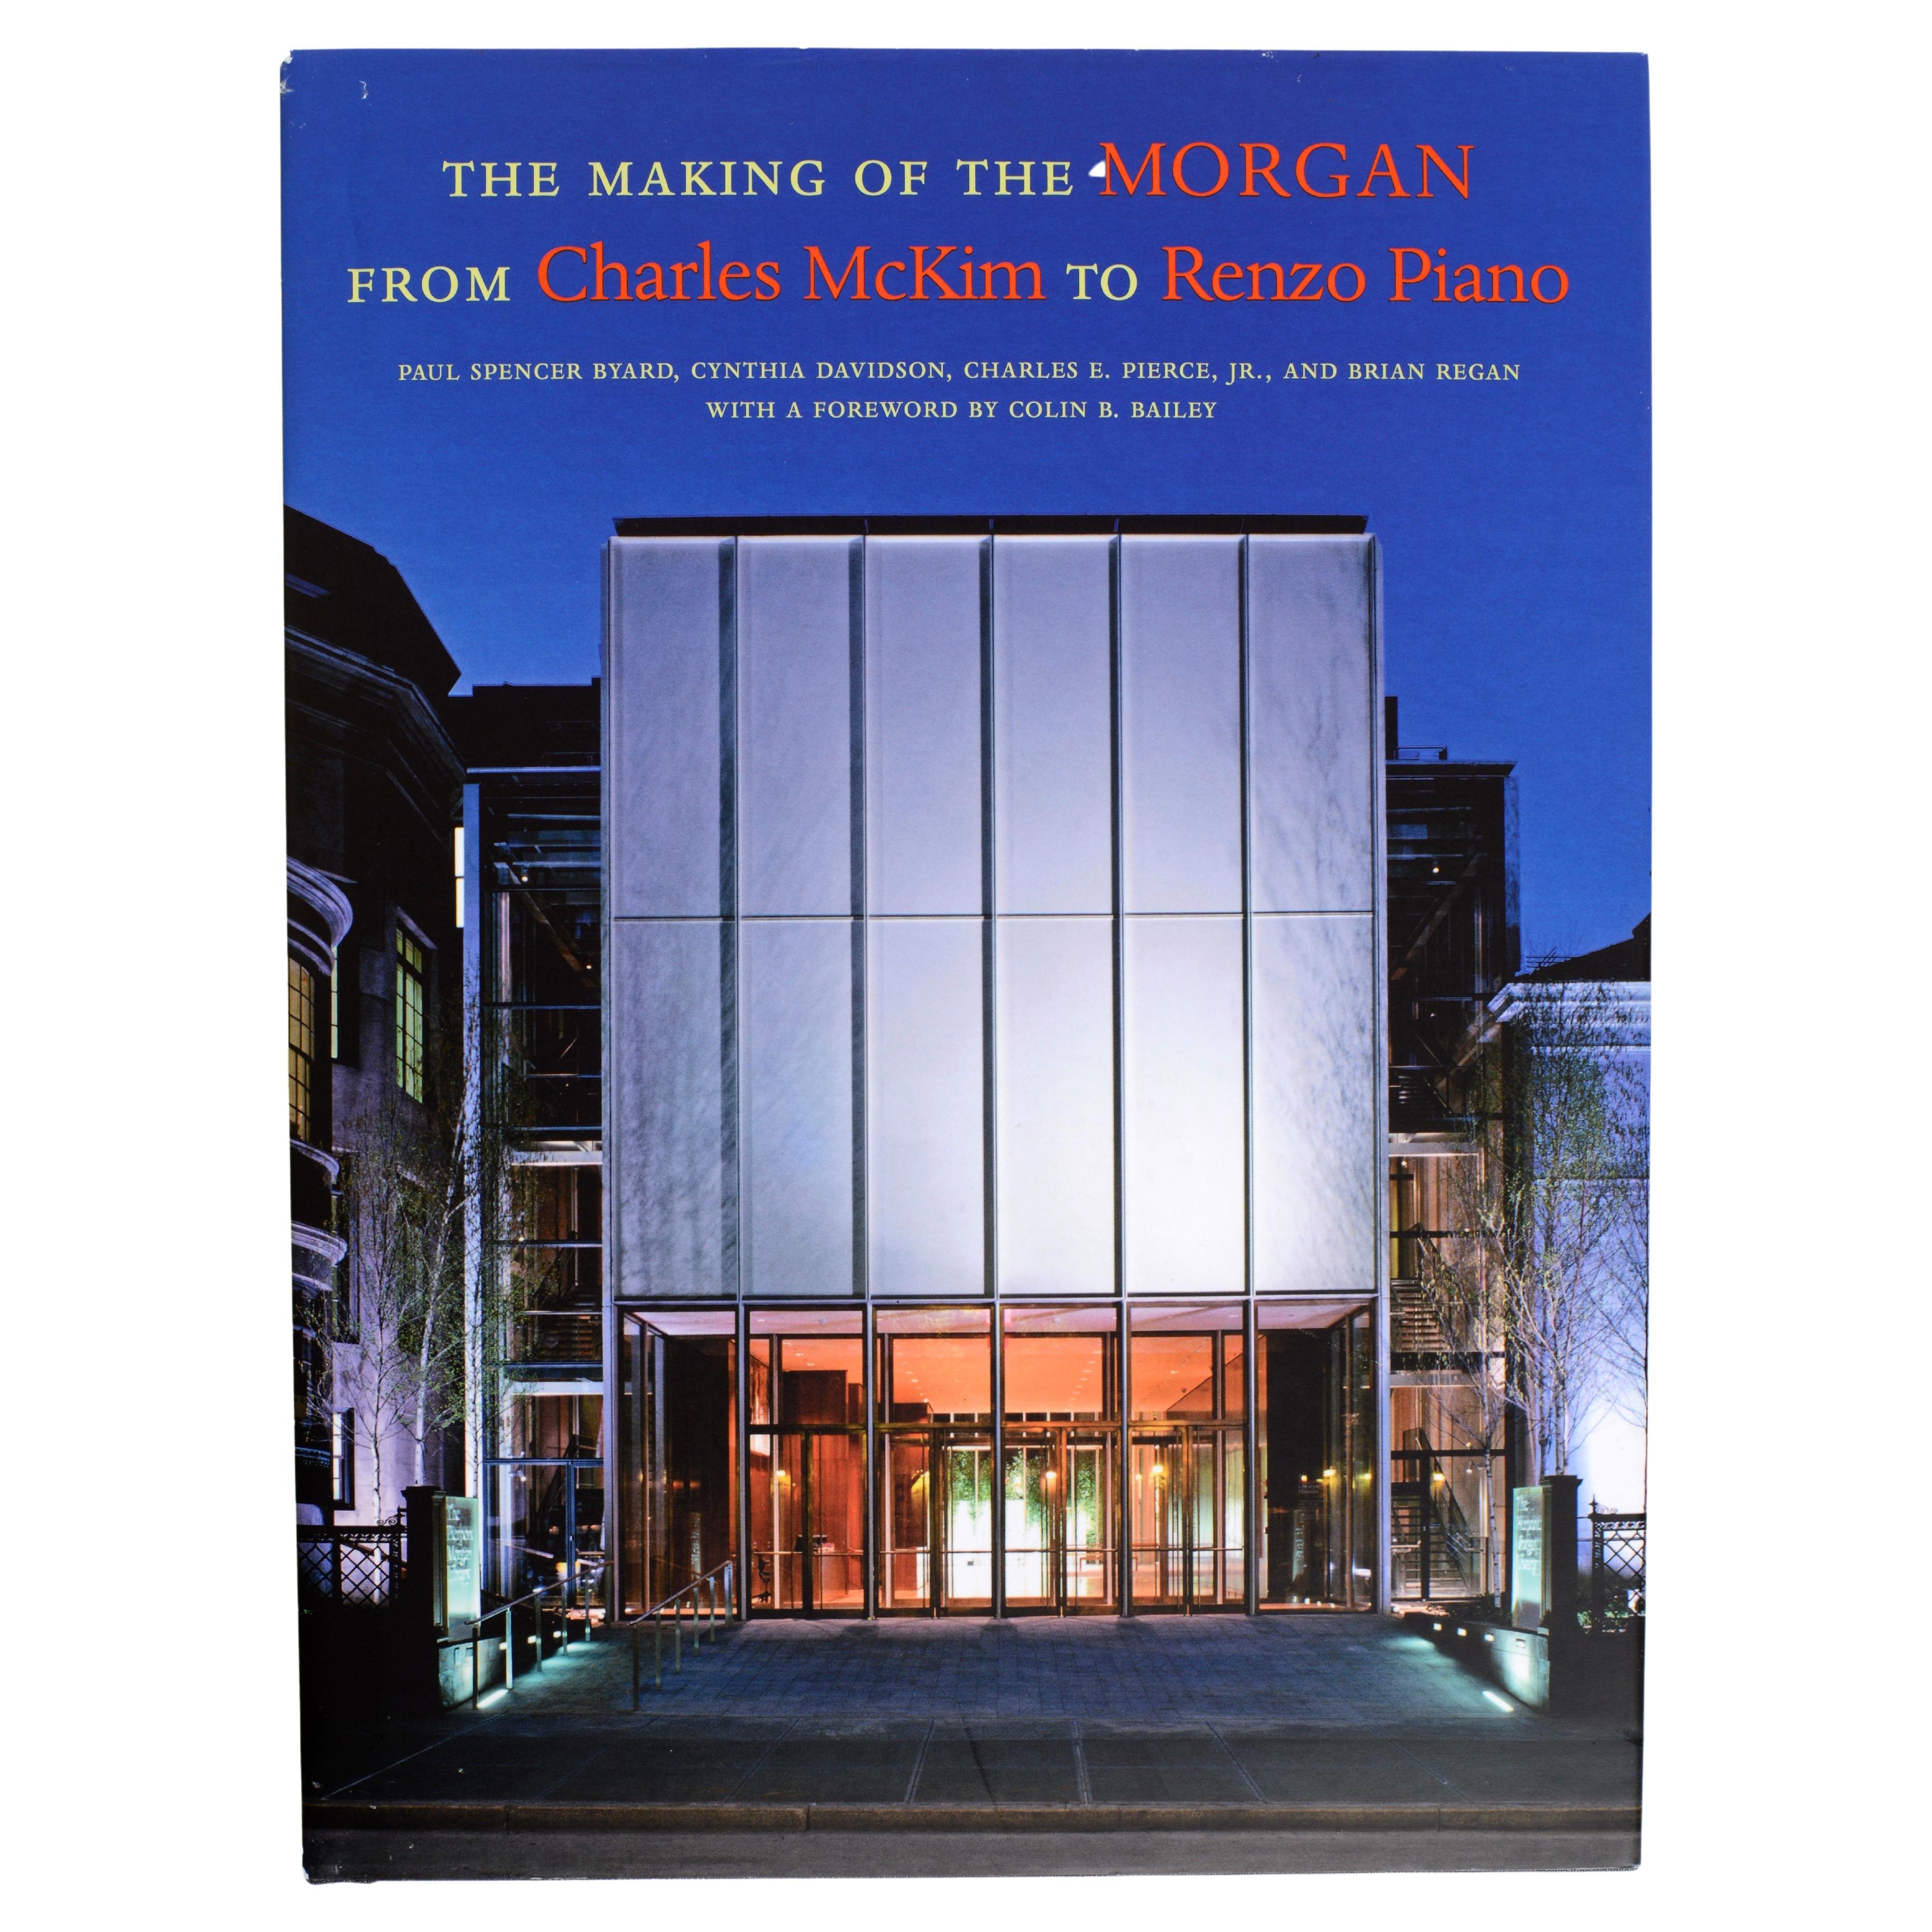 The Making of the Morgan von Charles McKim to Renzo Piano, 1st Ed